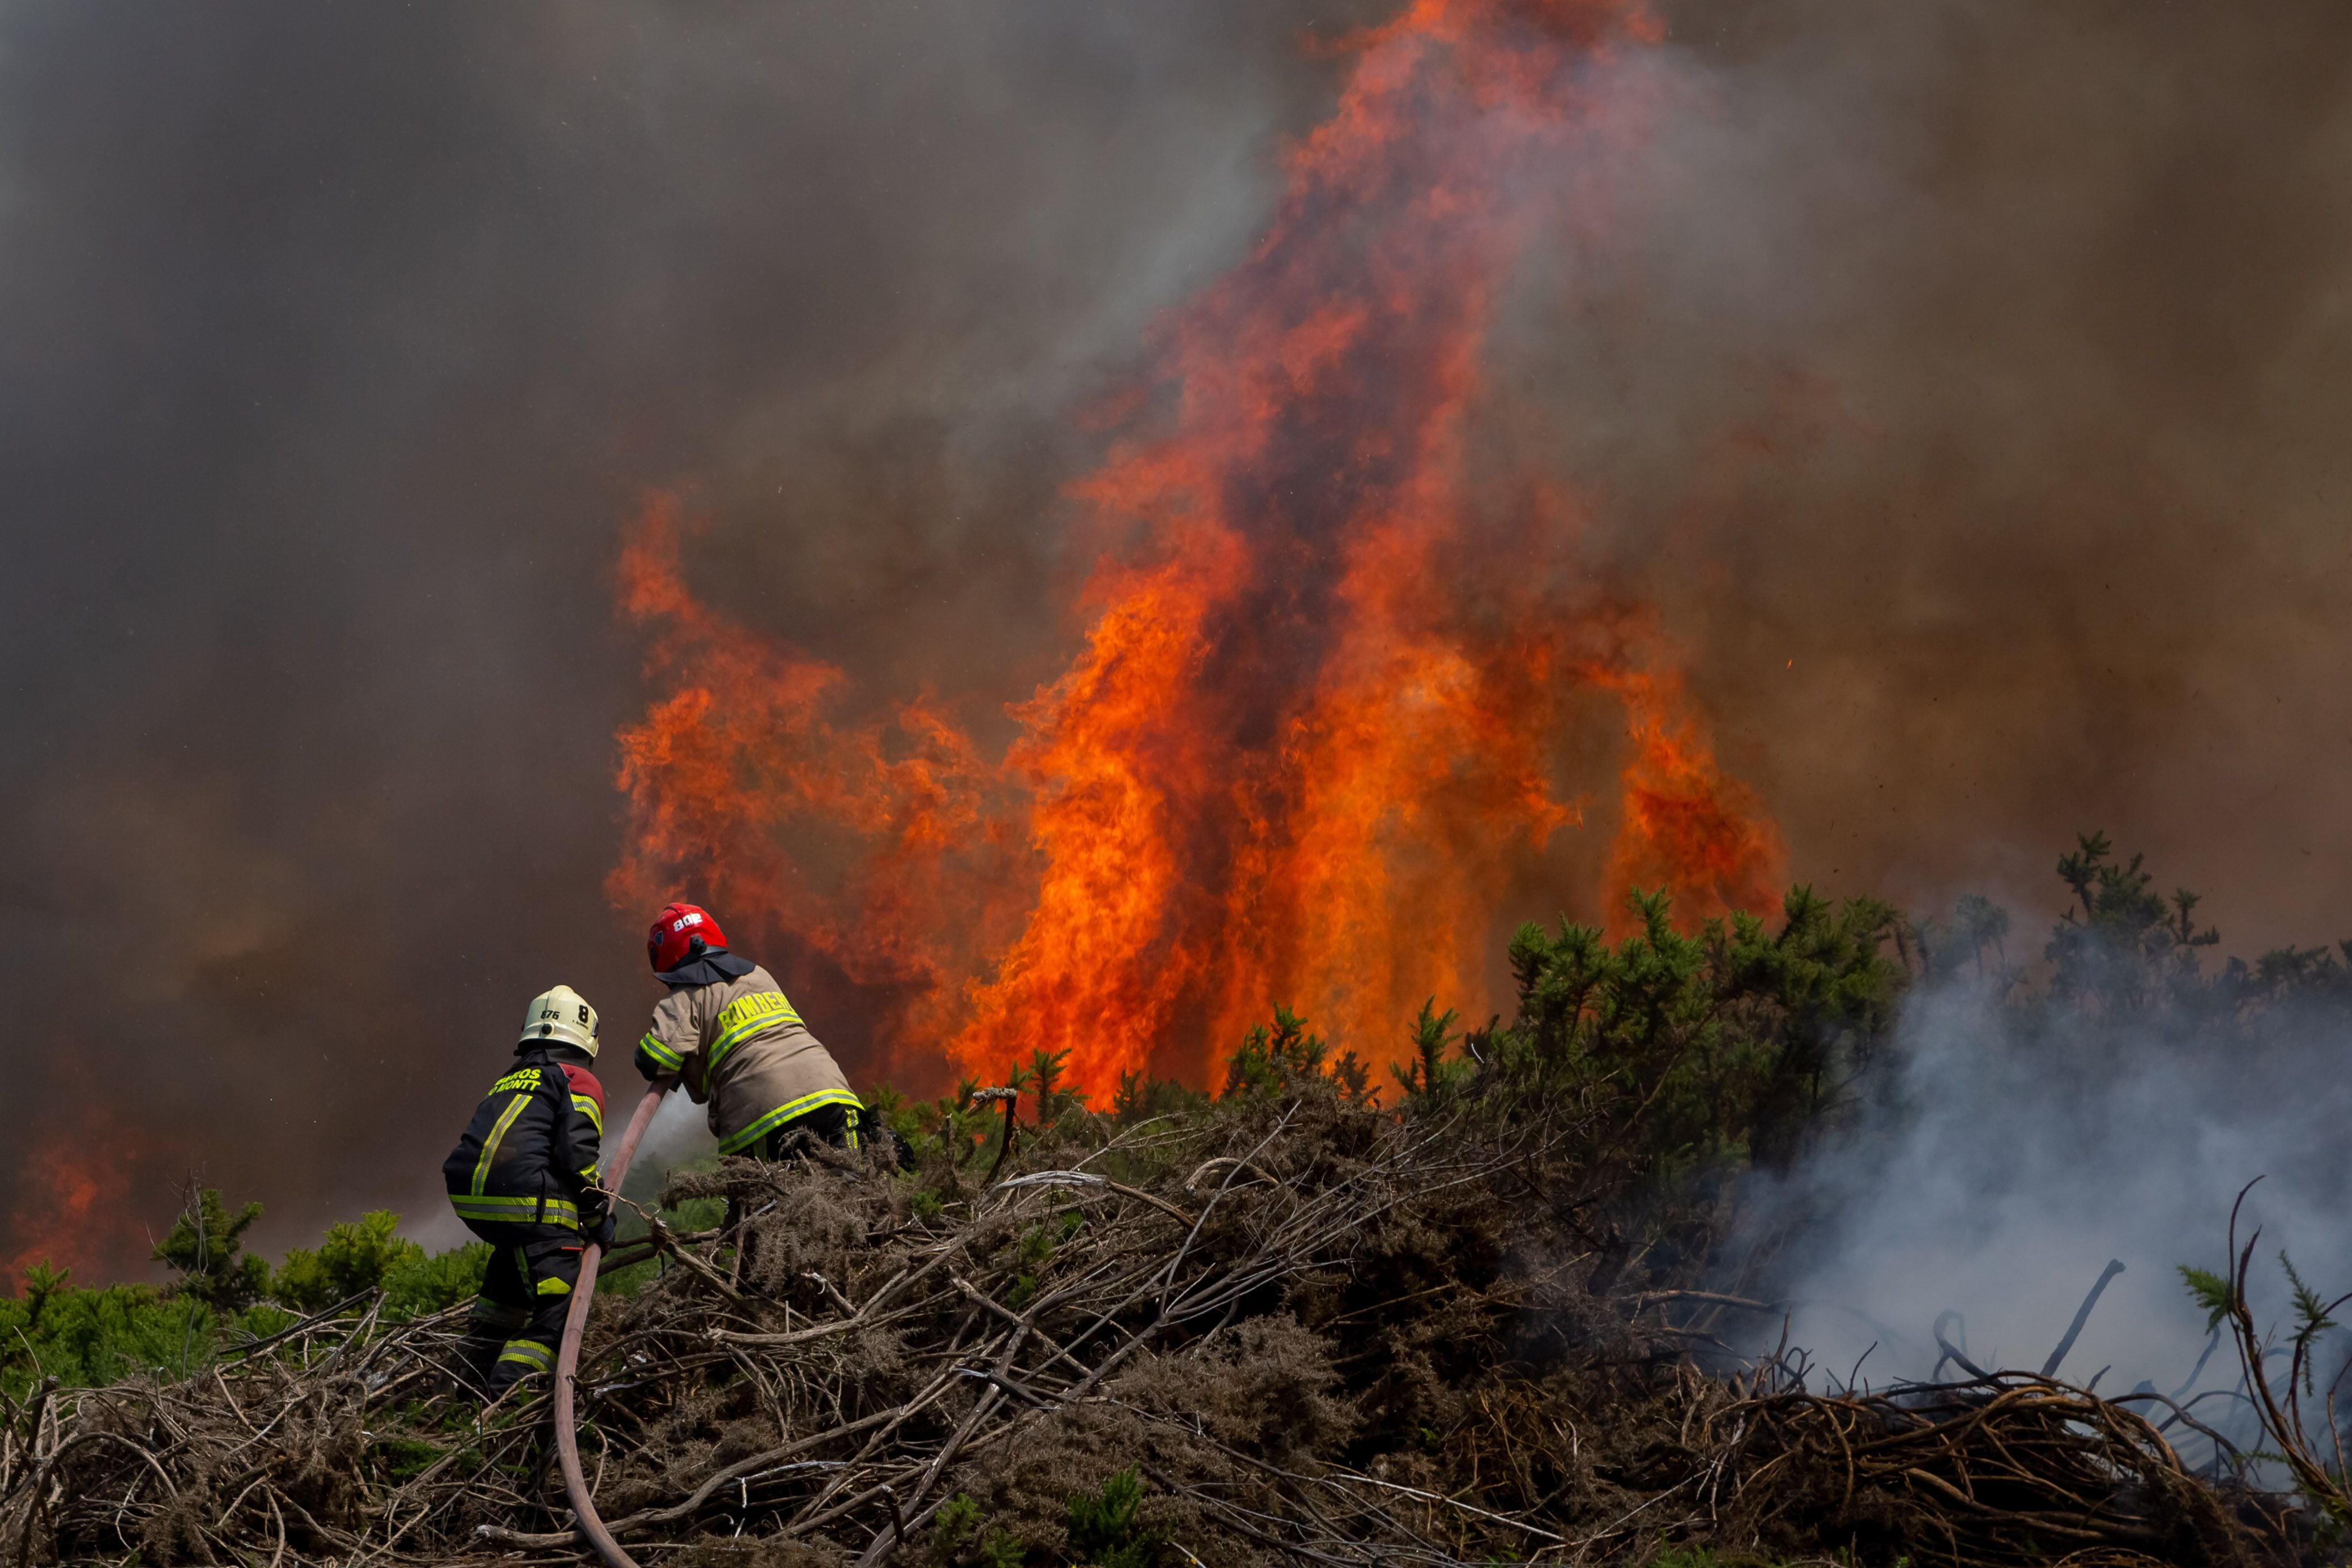 declaran alerta roja en chonchi por incendio forestal: rápido avance de las llamas y cercanía con poblados preocupa a las autoridades